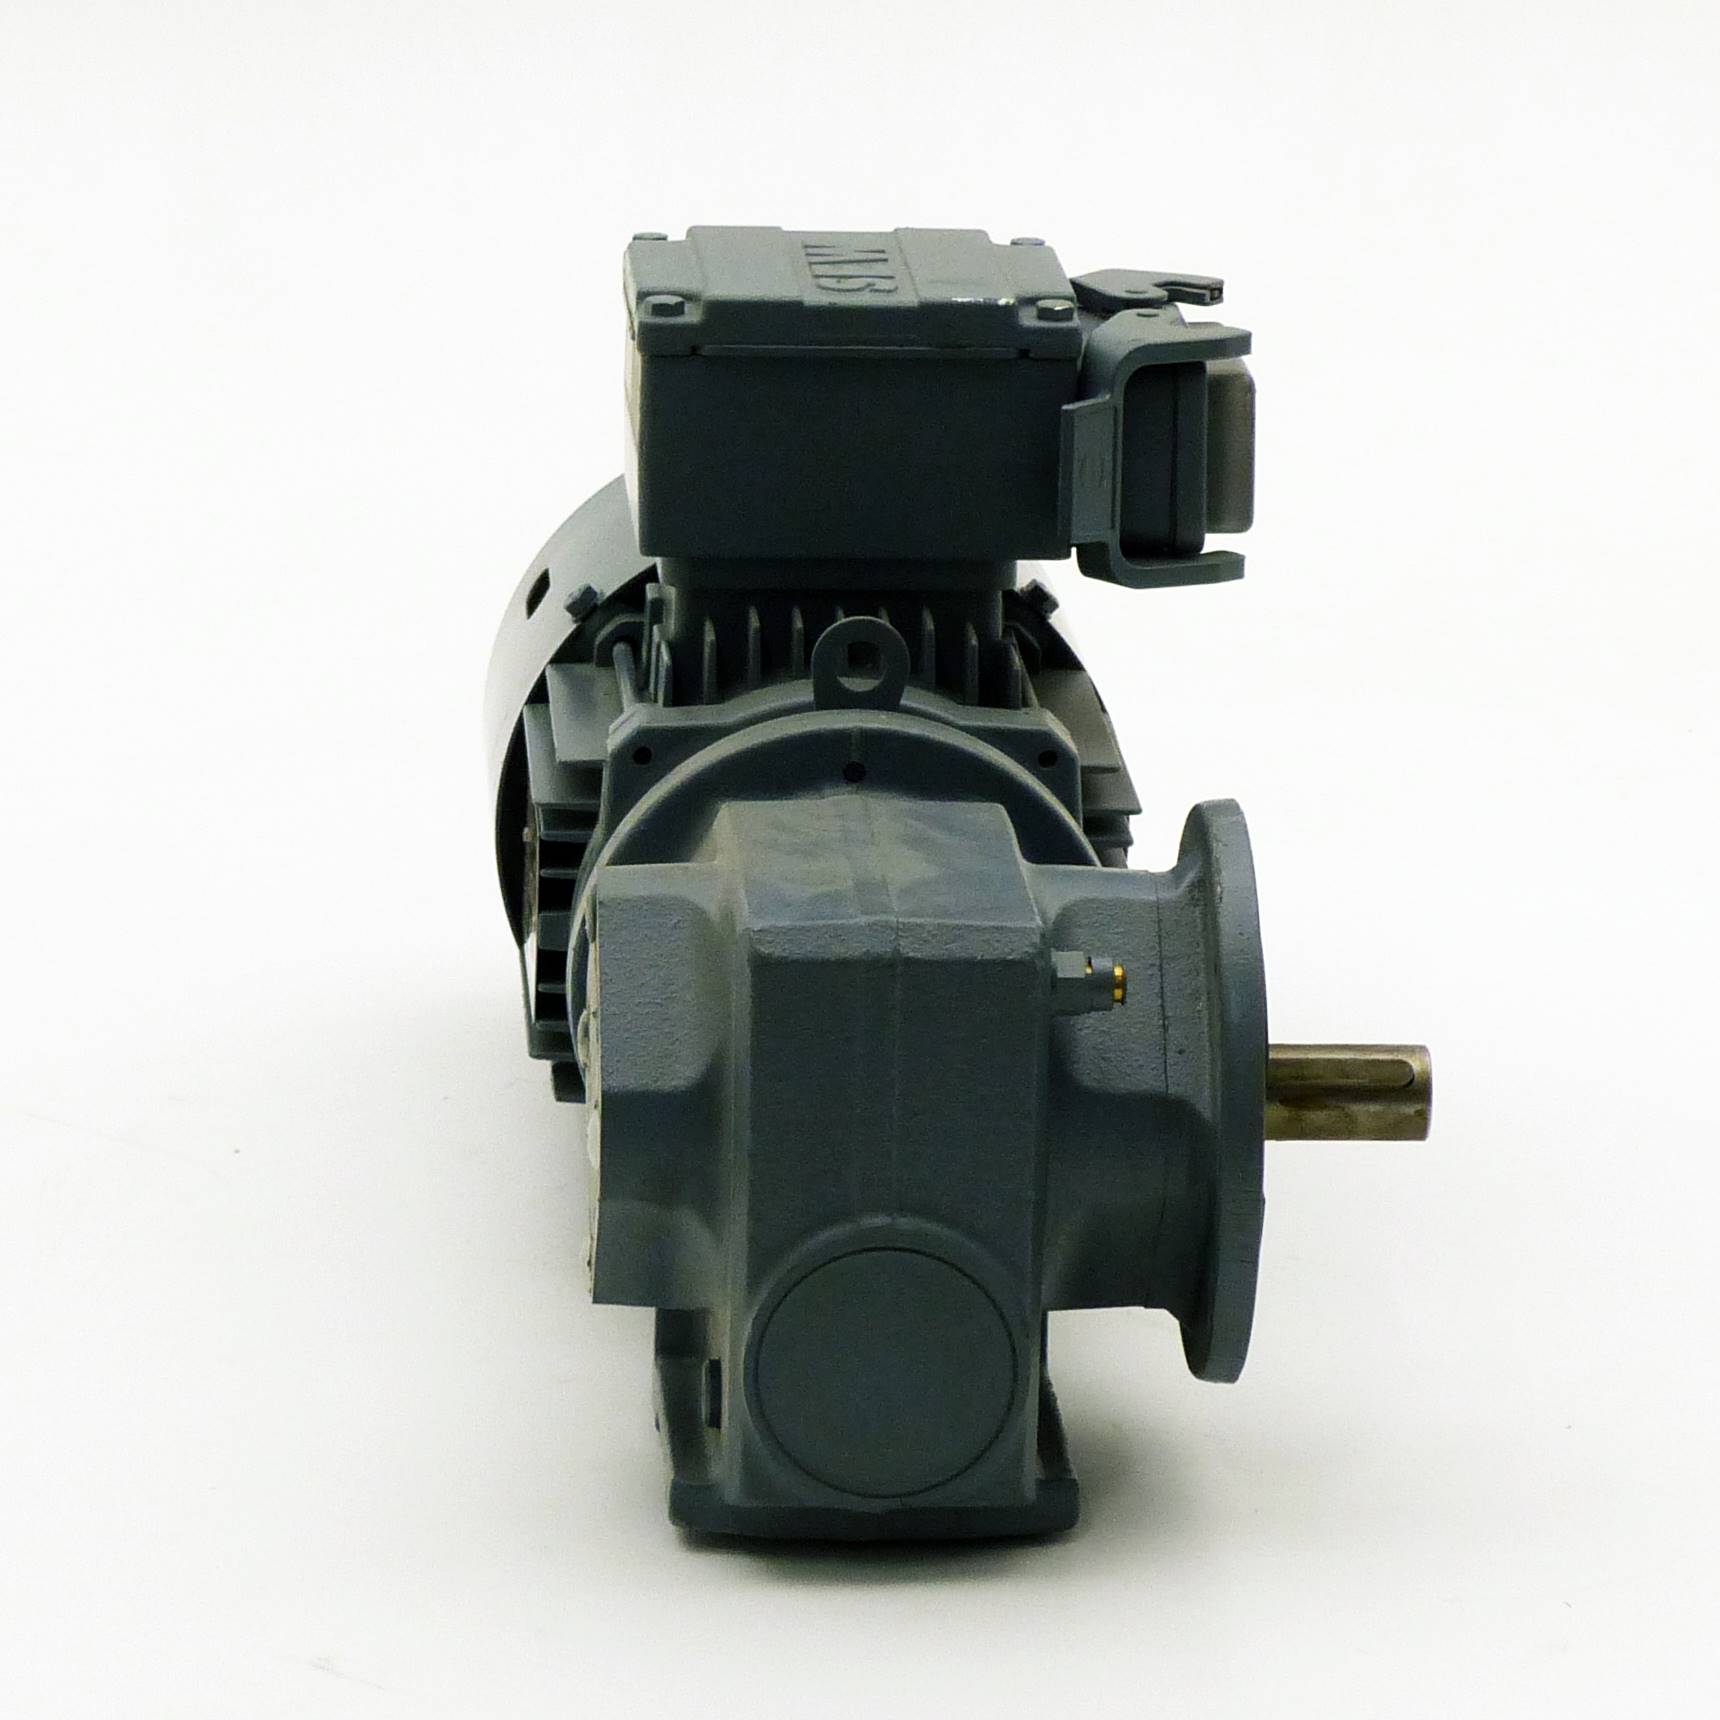 Getriebemotor SF37 DT71K4/BGM/ASB1 